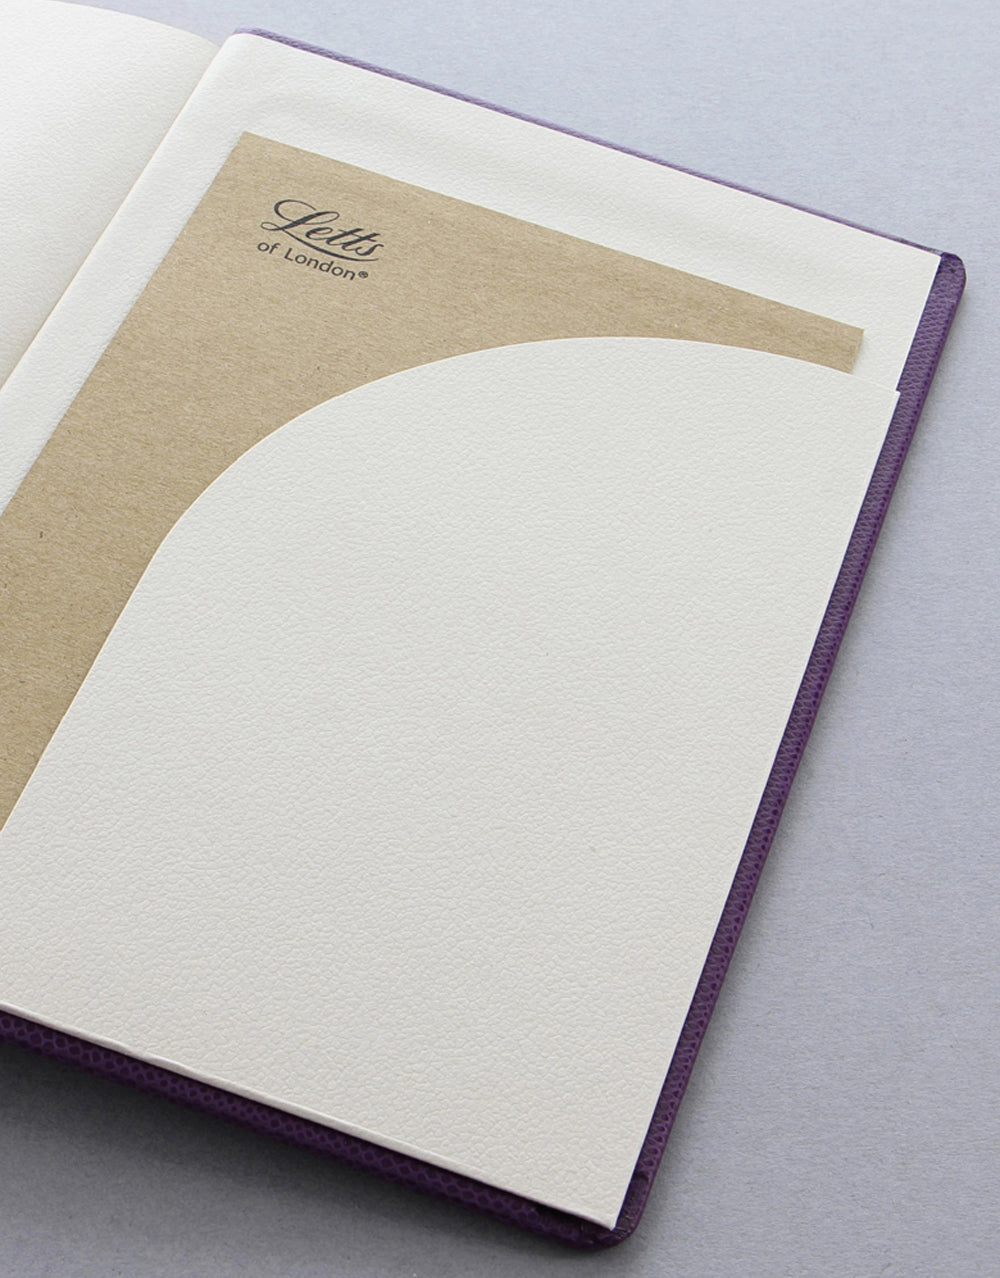 Legacy Book Plain Notebook Purple#colour_purple